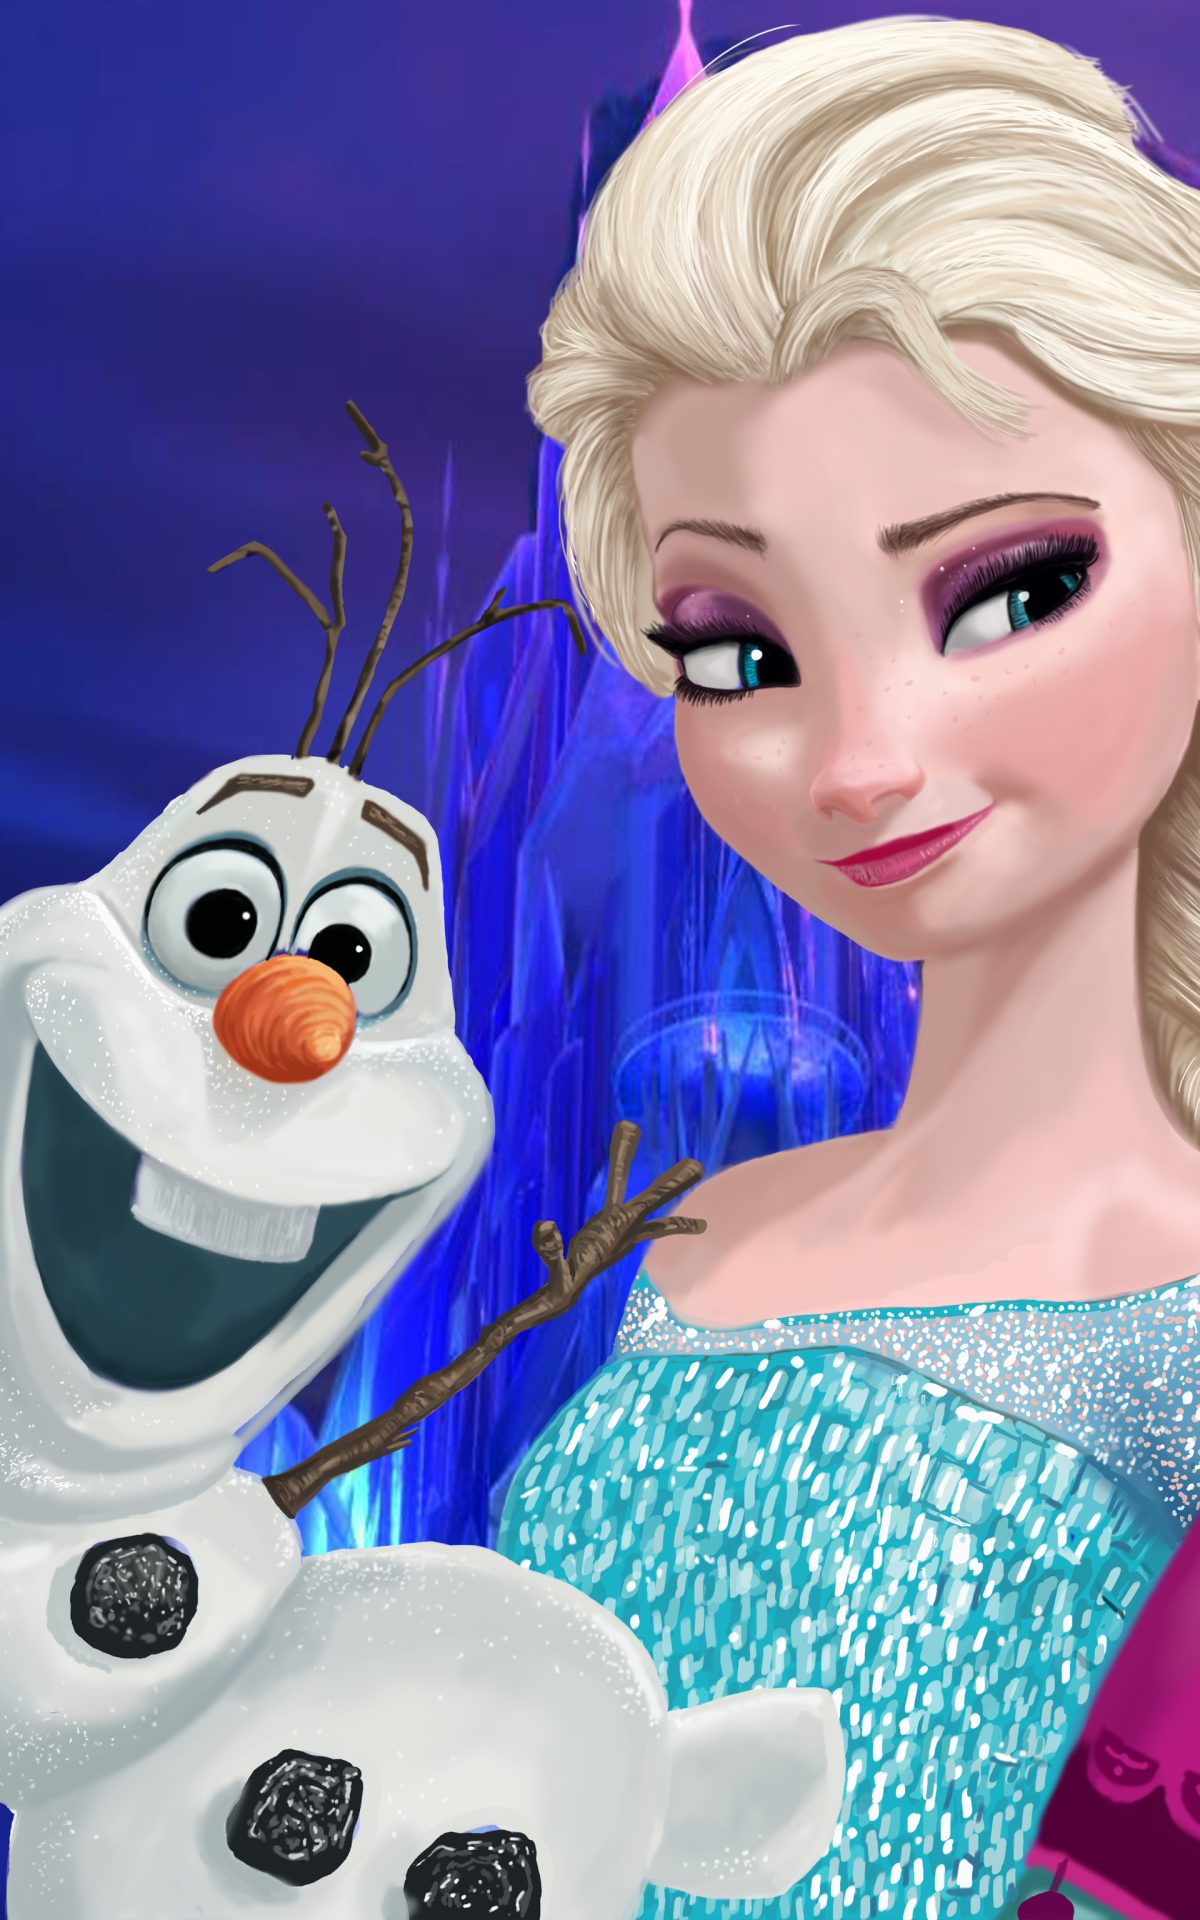 Descarga gratuita de fondo de pantalla para móvil de Películas, Frozen: El Reino Del Hielo, Congelado (Película), Elsa (Congelada), Olaf (Congelado).